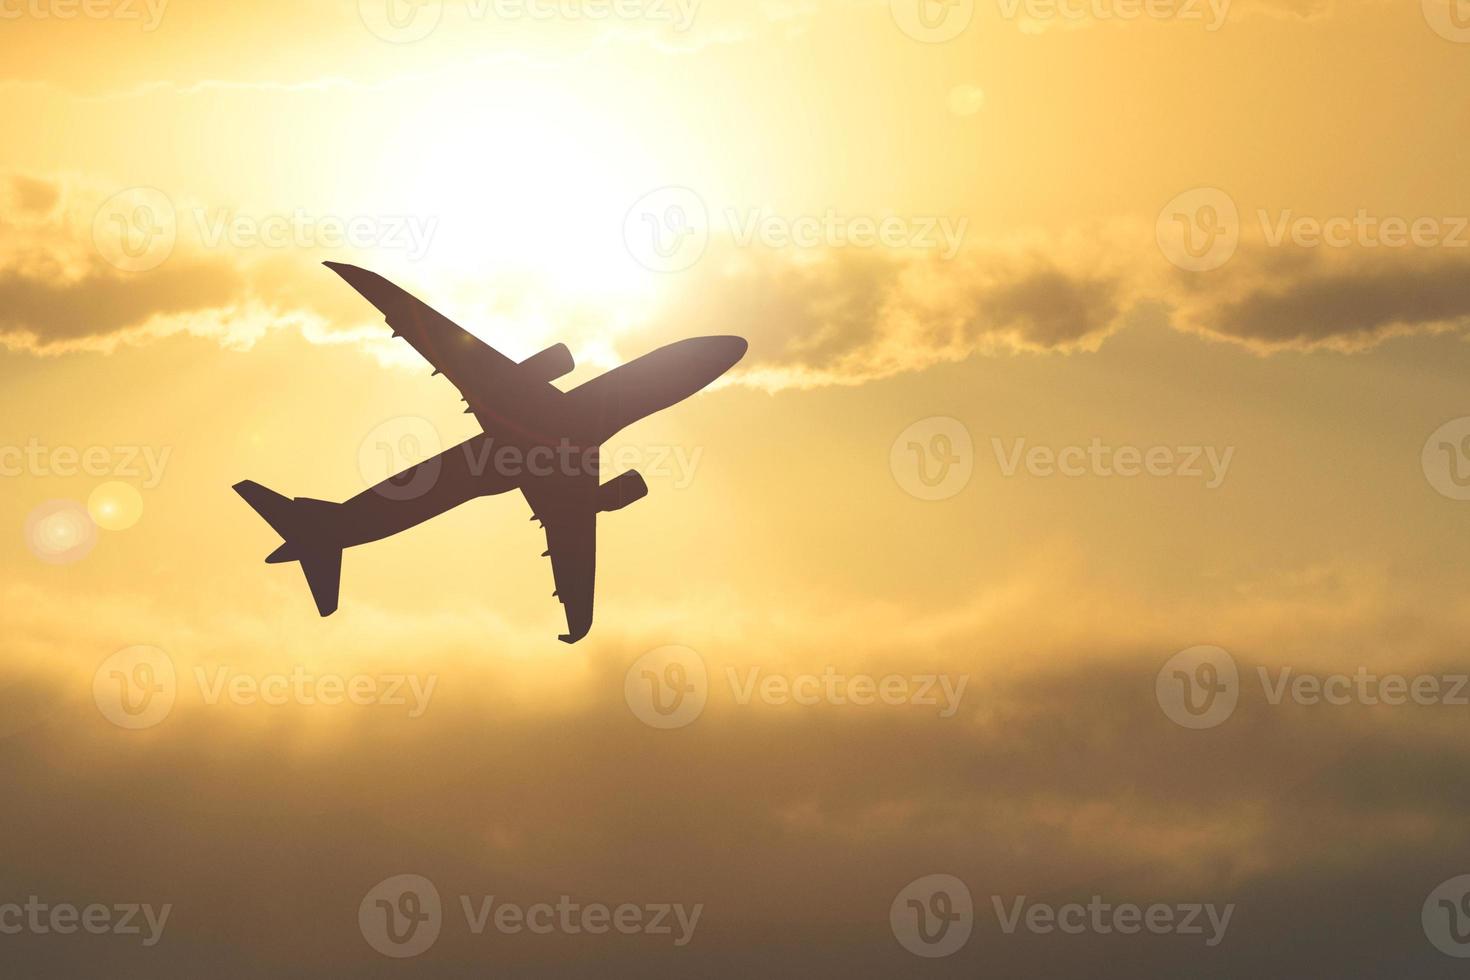 silueta de un avión de pasajeros en el cielo. viajes e ideas de viajes alrededor del mundo. foto